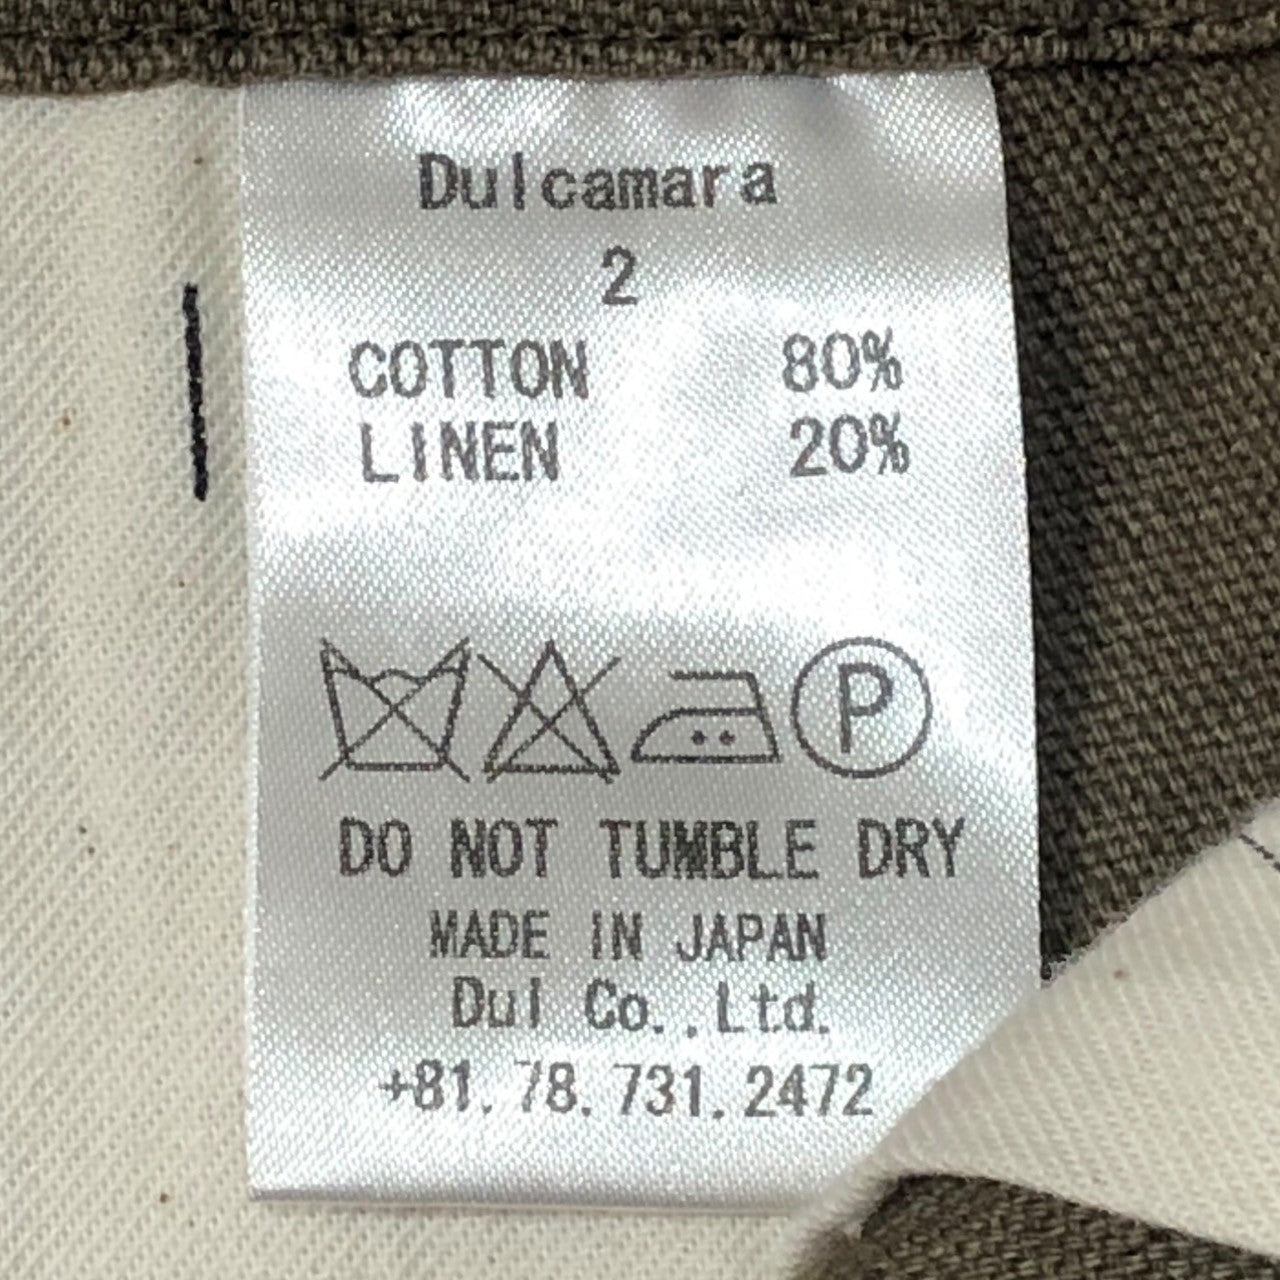 Dulcamara(ドゥルカマラ) Cotton linen wide easy pants コットン リネン ワイド イージー パンツ SIZE 2(M) ベージュ